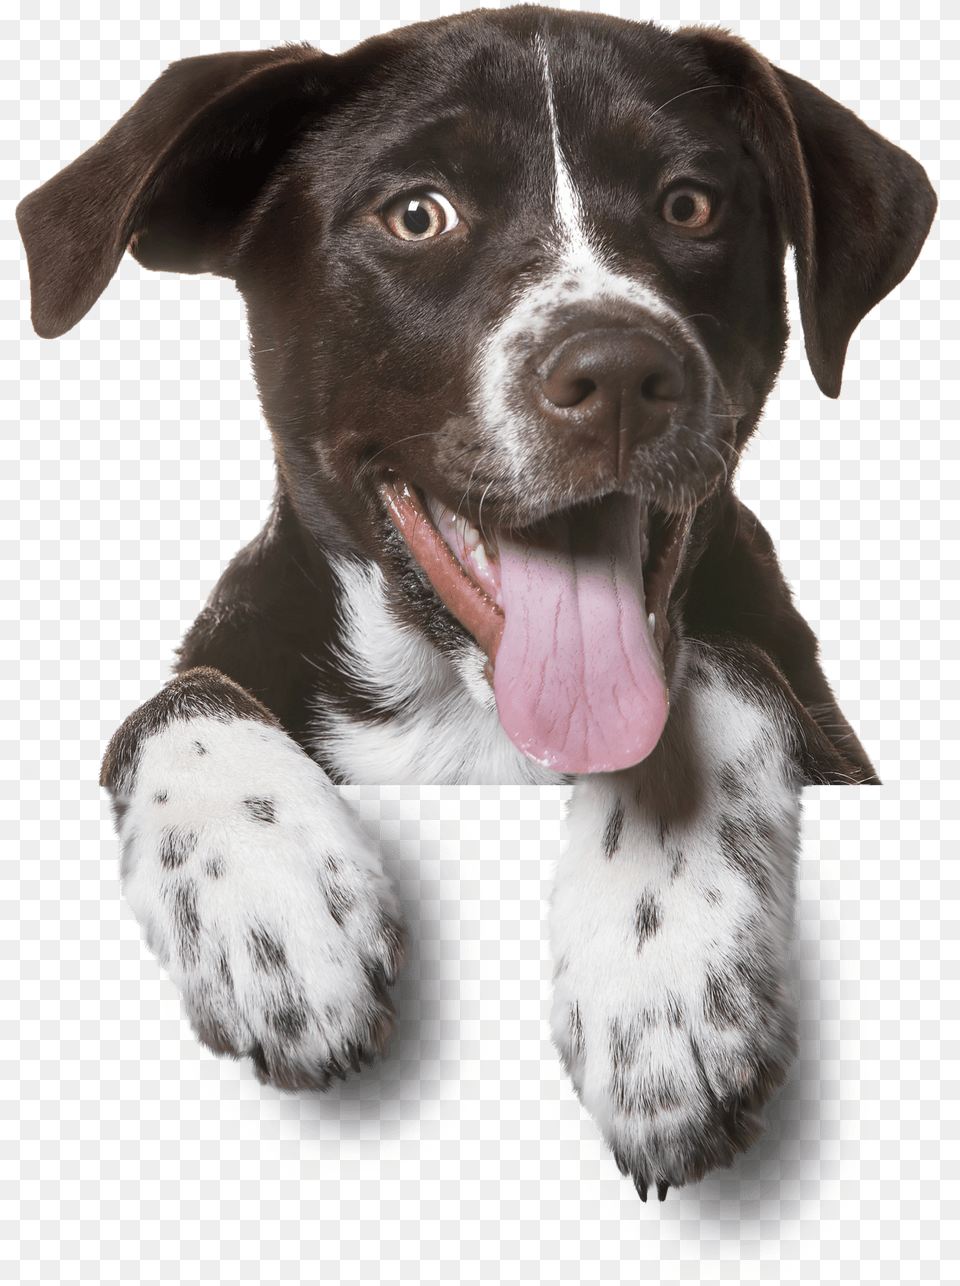 Pet Hp Dog Bg Min Um Ato De Amor Animais, Animal, Canine, Mammal, Pointer Png